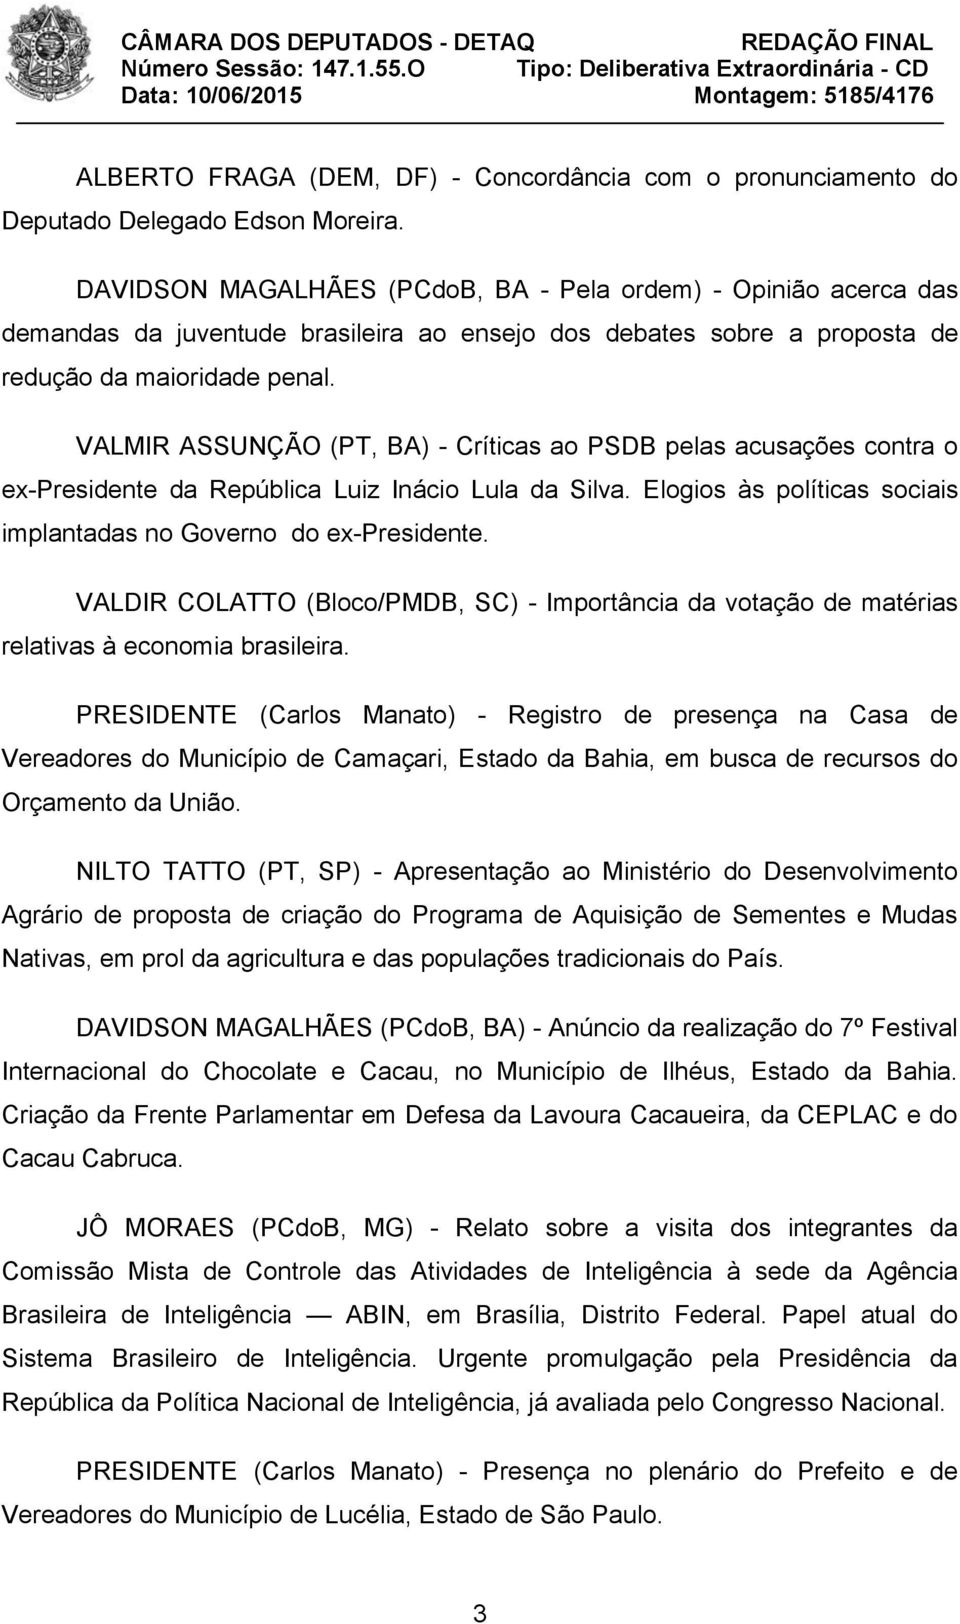 VALMIR ASSUNÇÃO (PT, BA) - Críticas ao PSDB pelas acusações contra o ex-presidente da República Luiz Inácio Lula da Silva. Elogios às políticas sociais implantadas no Governo do ex-presidente.